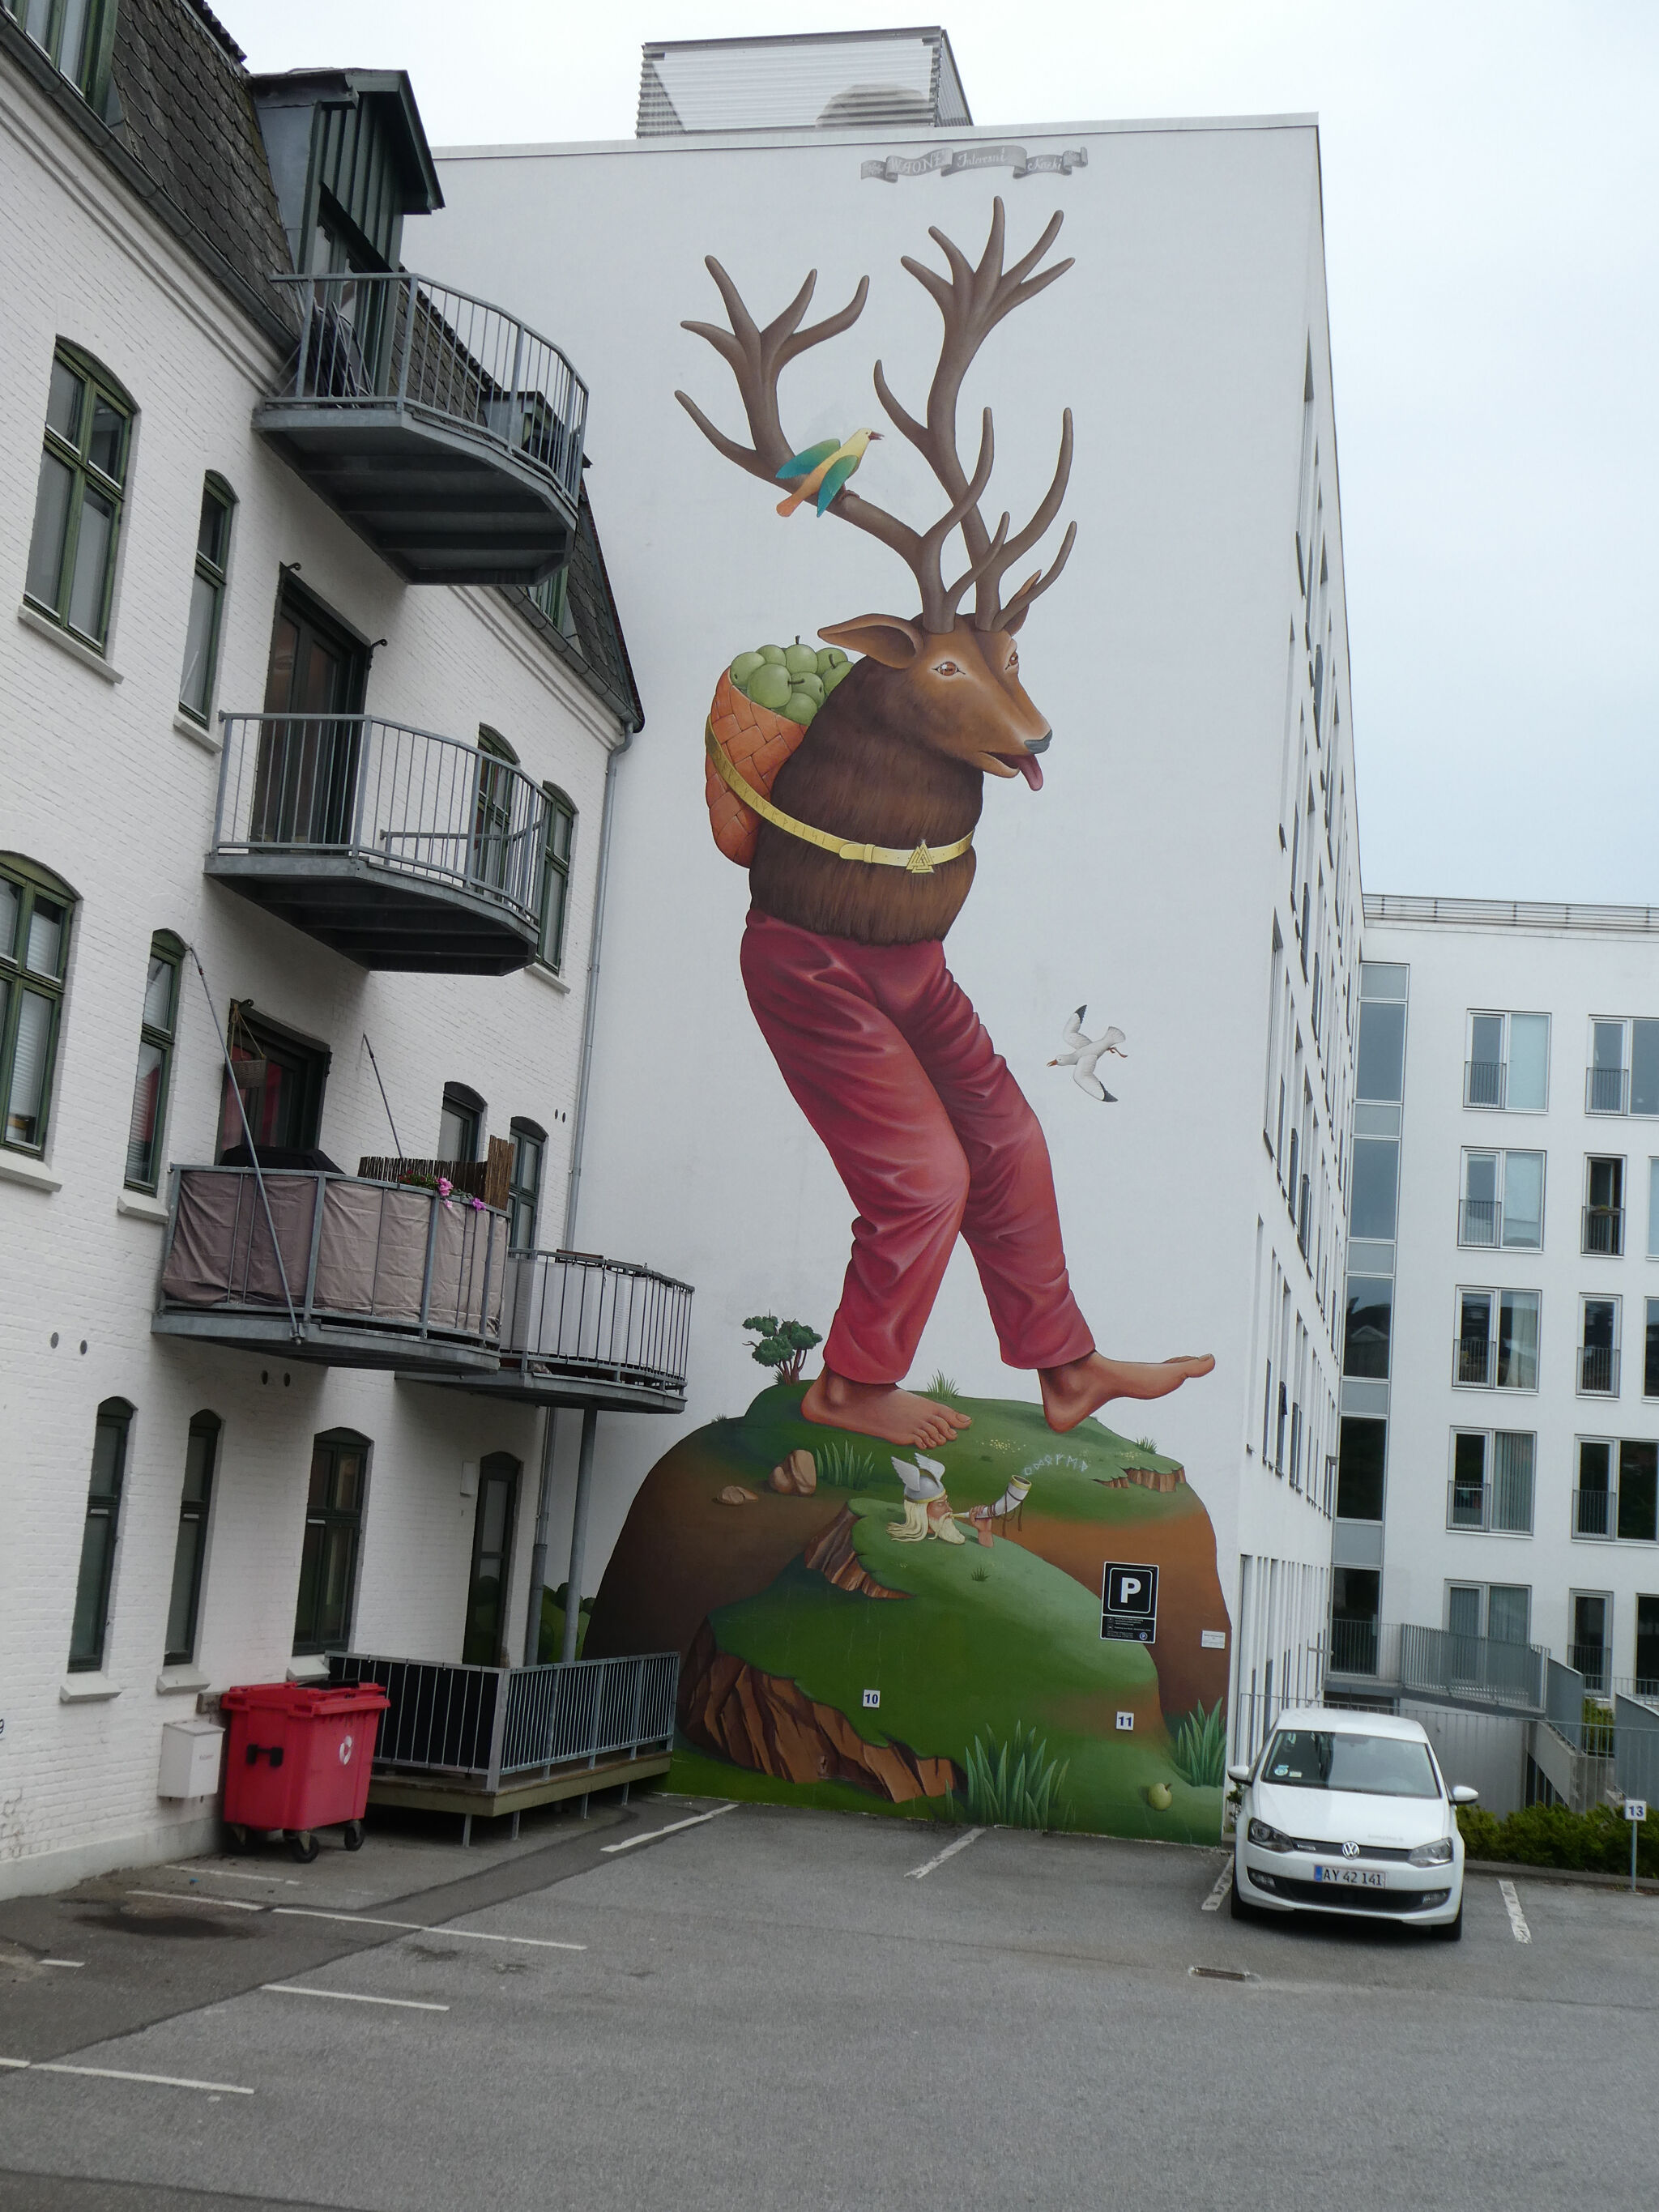 Interesni Kazki&mdash;Walking Reindeer / "Eikpynir"